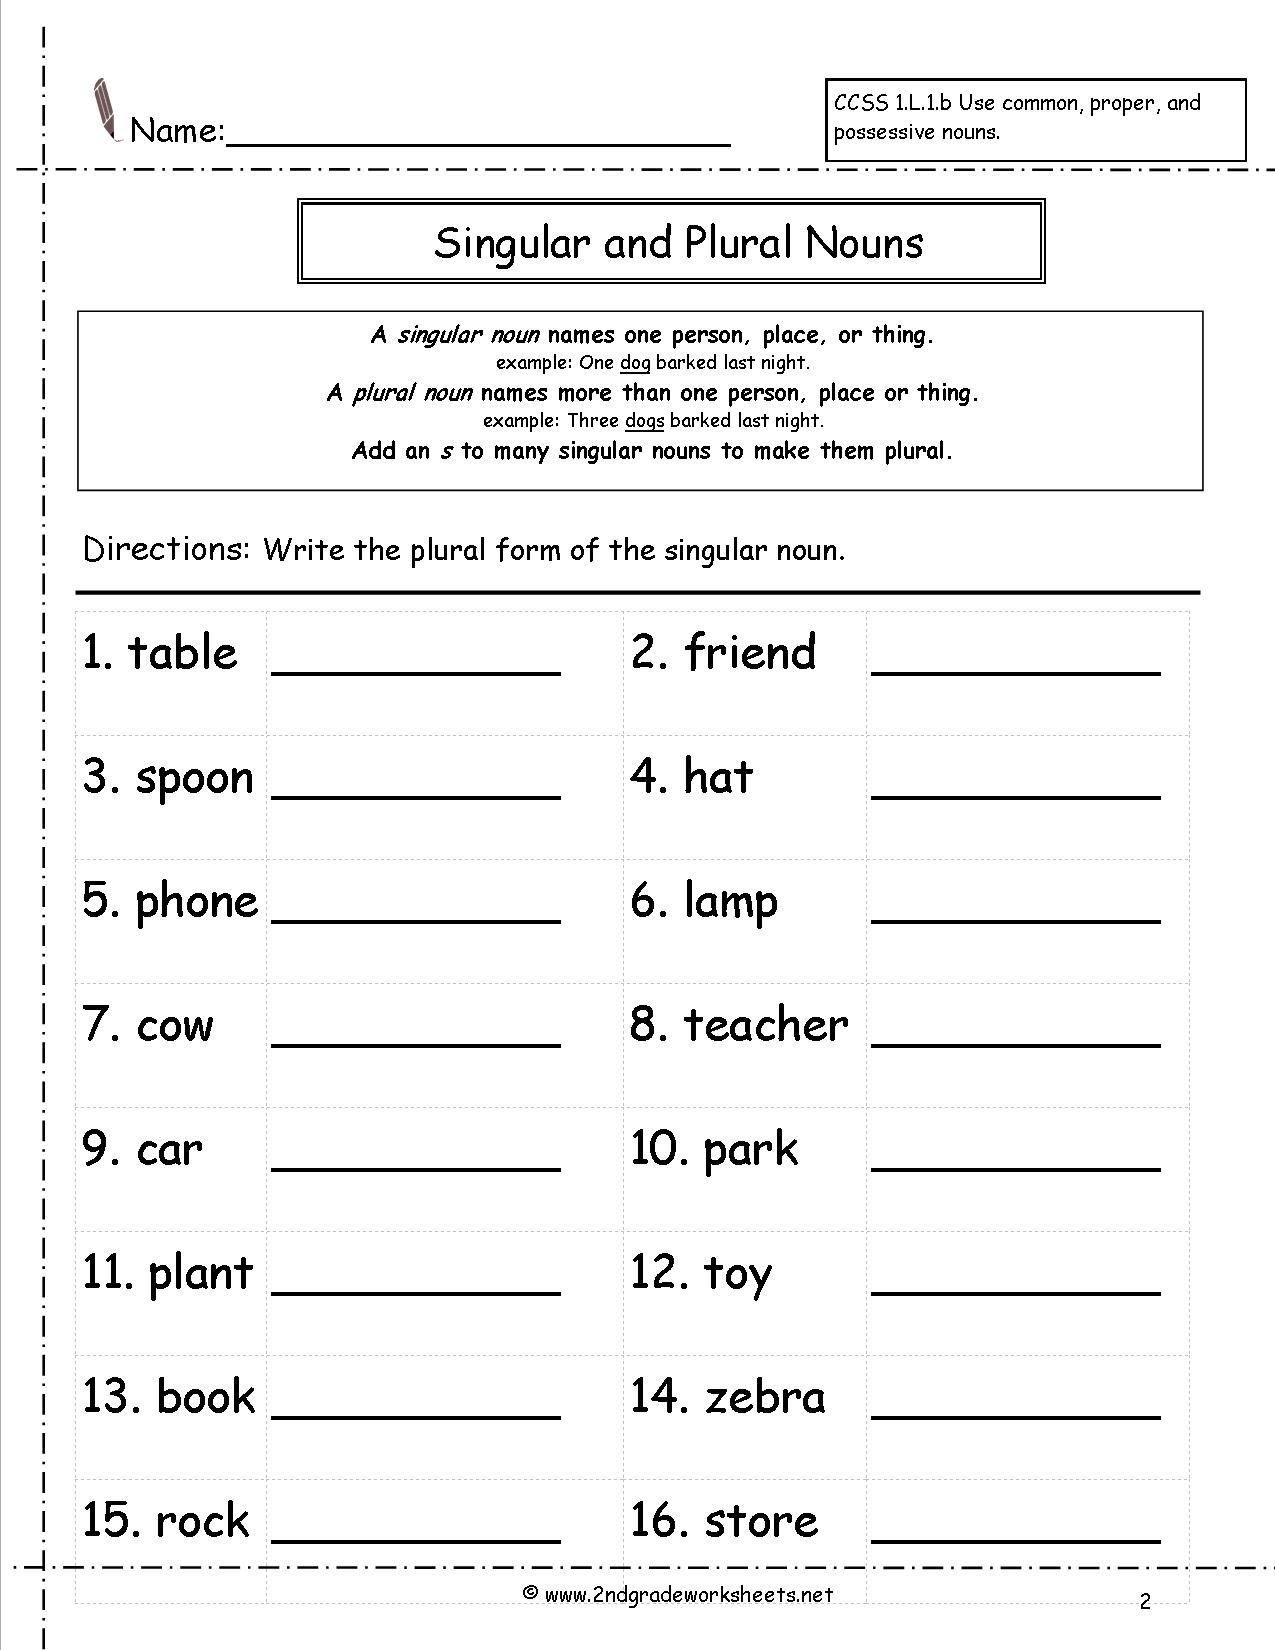 Plural Nouns Worksheets 2nd Grade The Best Worksheets Image